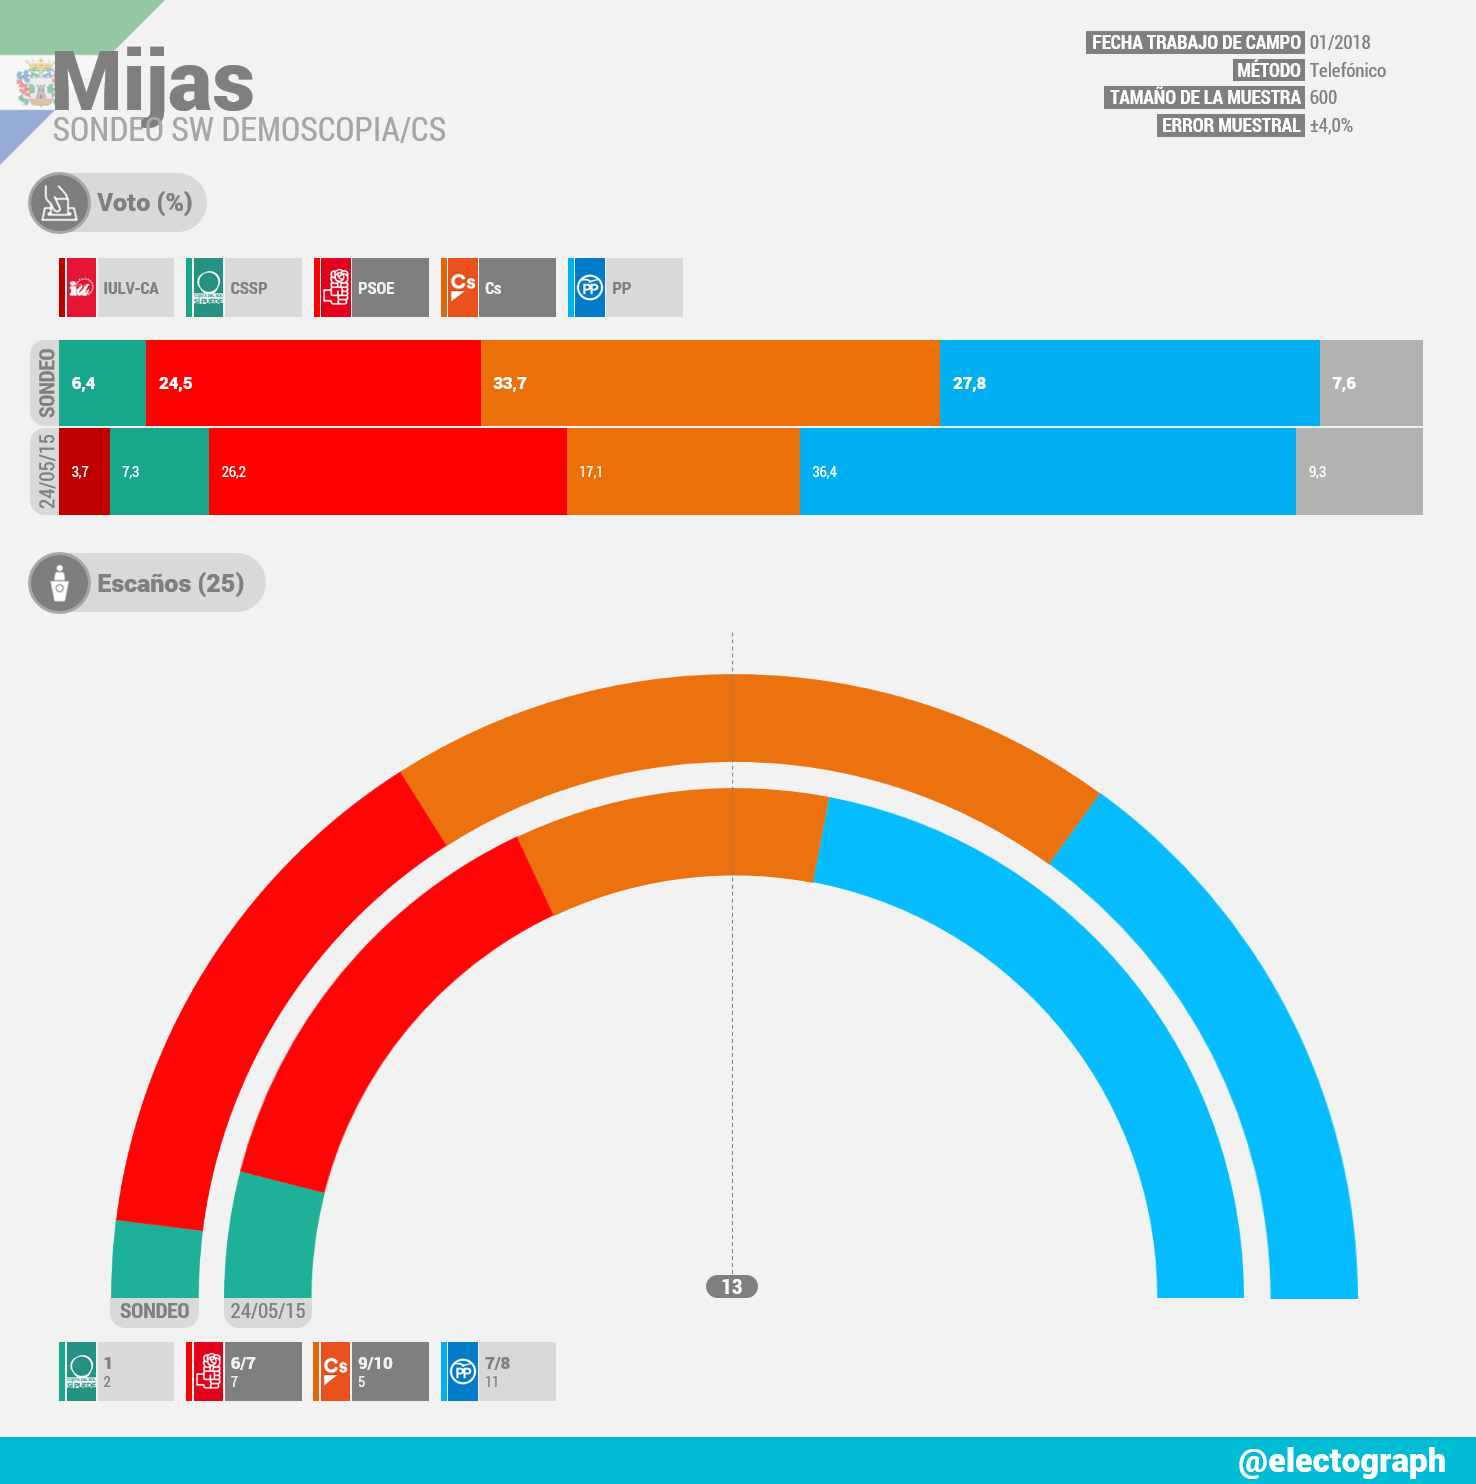 Gráfico de la encuesta para elecciones municipales en Mijas realizada por SW Demoscopia para Cs en enero de 2018